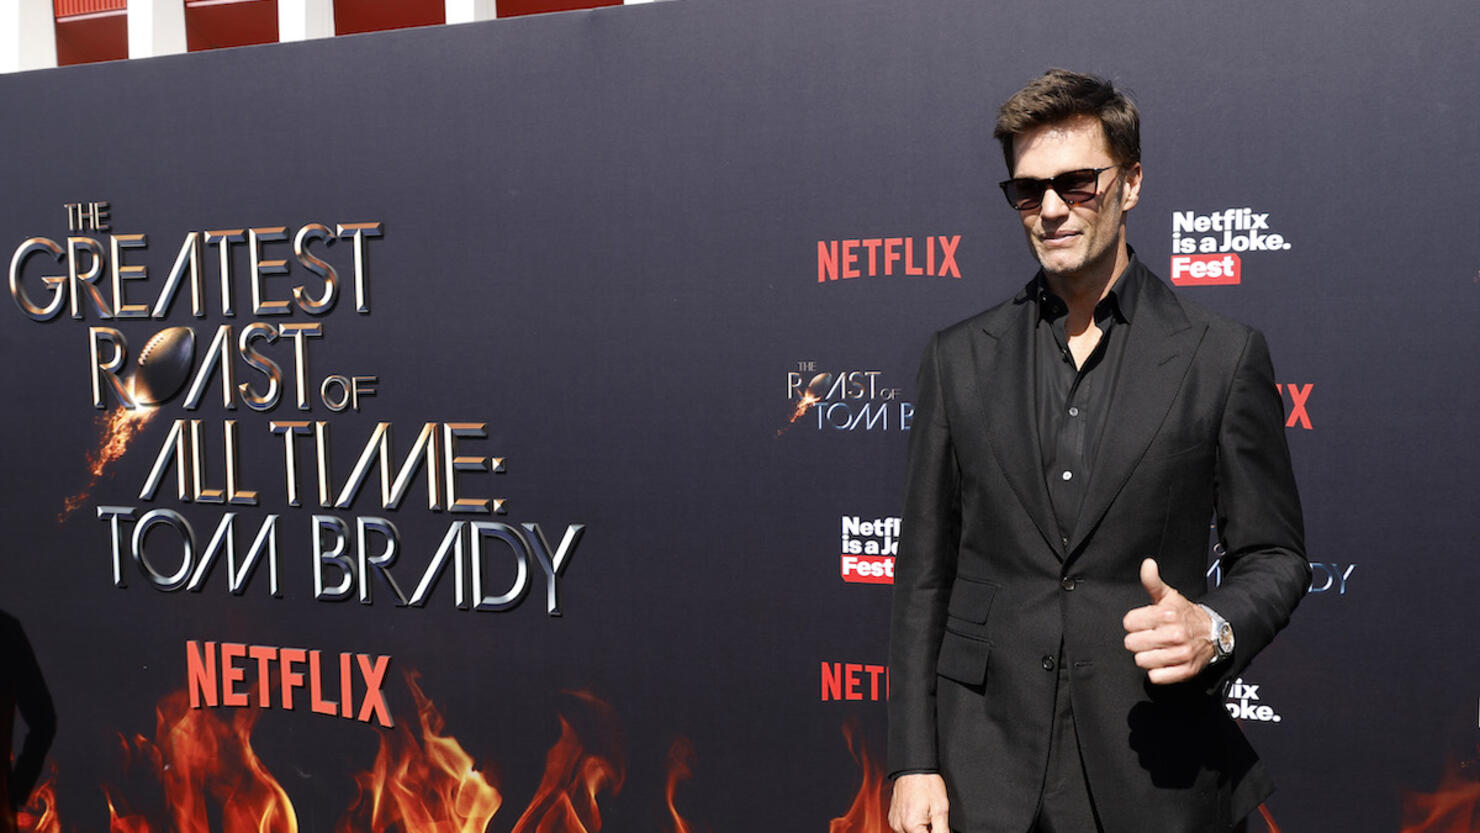 Netflix Is A Joke Fest's "The Greatest Roast Of All Time: Tom Brady"